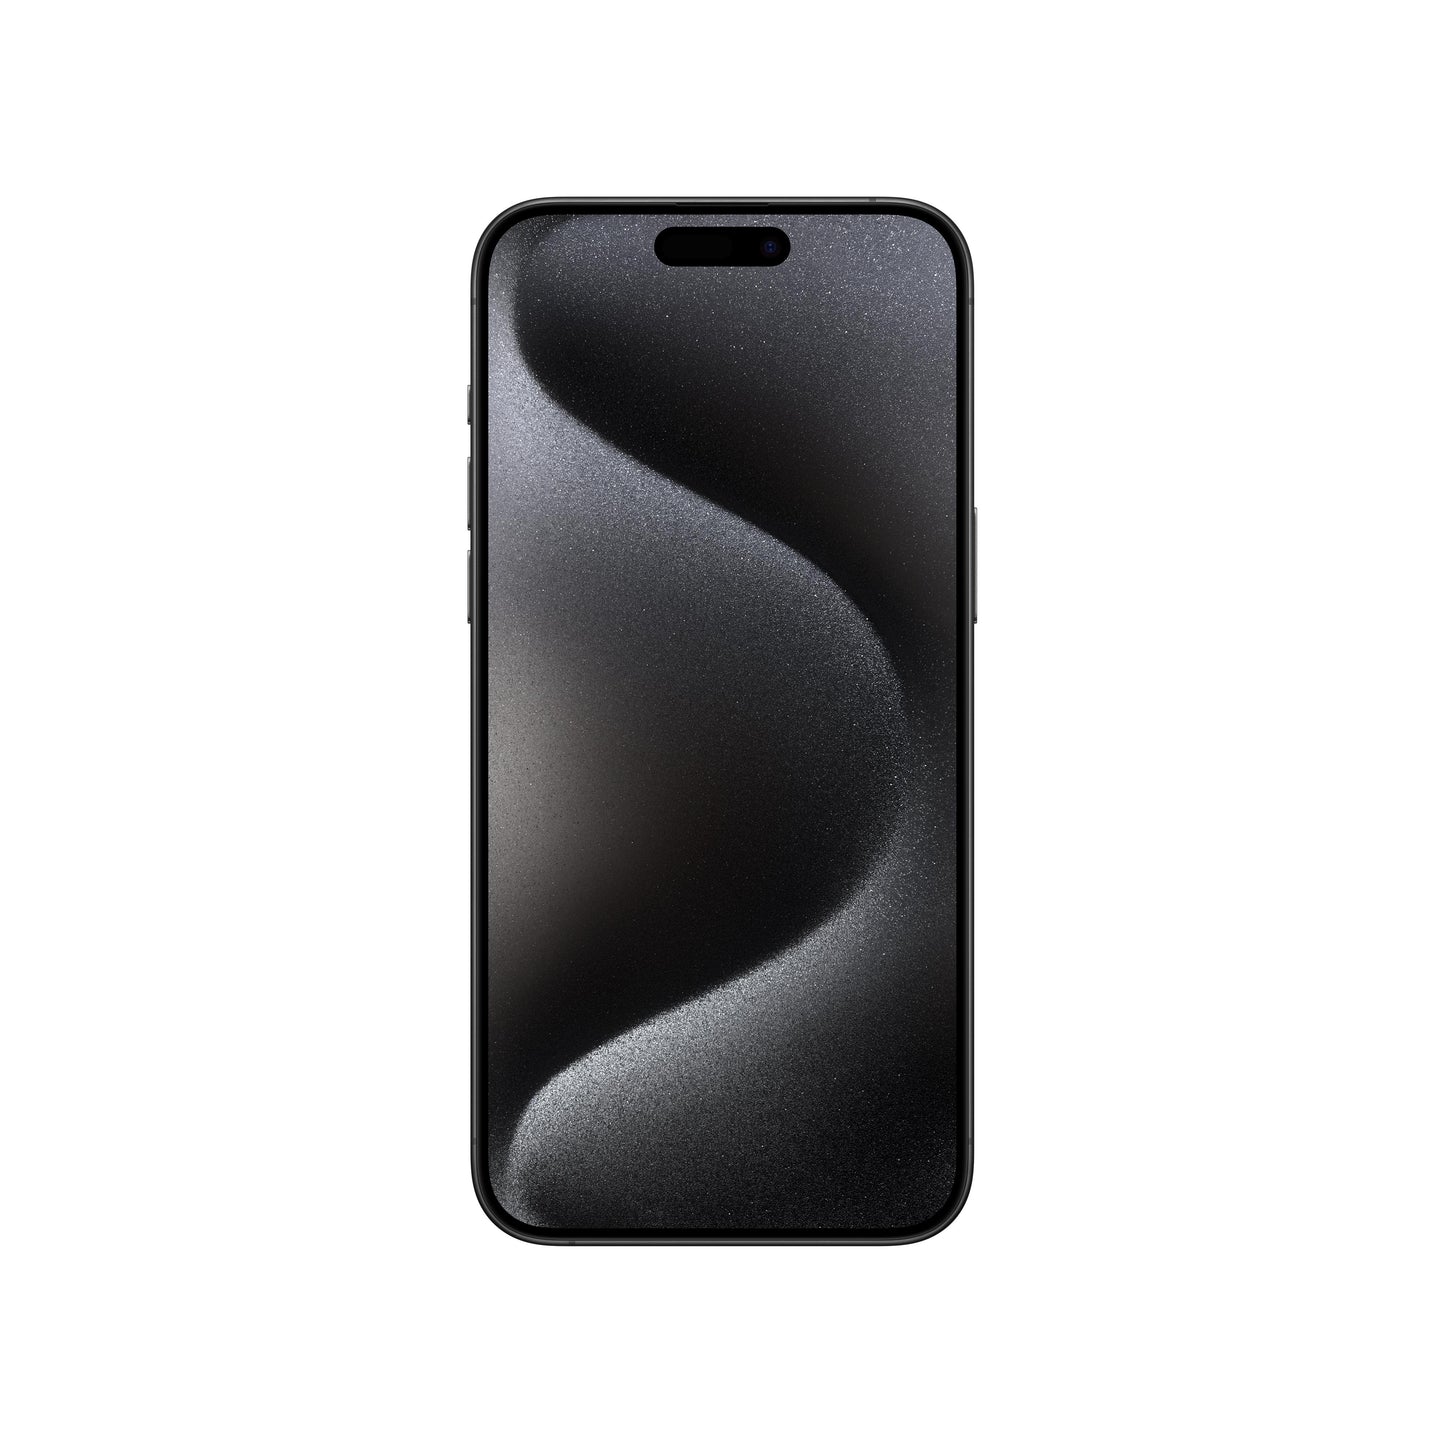 iPhone Pro Max in Black Titanium, 256GB Storage. EMI available |Get best offers for iphone 15 pro Max [variant] Black Titanium 256GB.